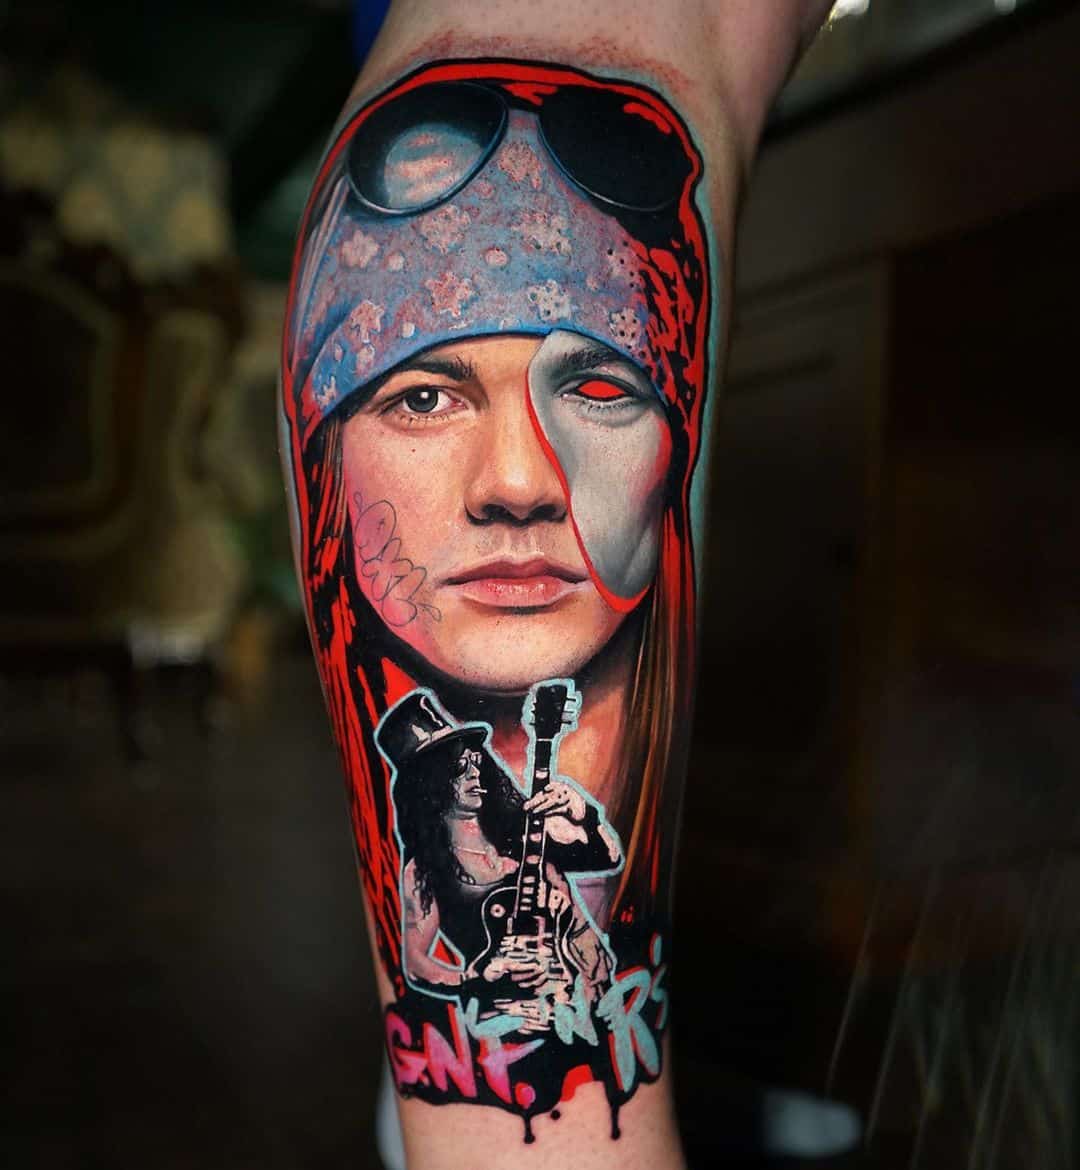 Axl Rose portrait tattoo by davepaulo tattooartist